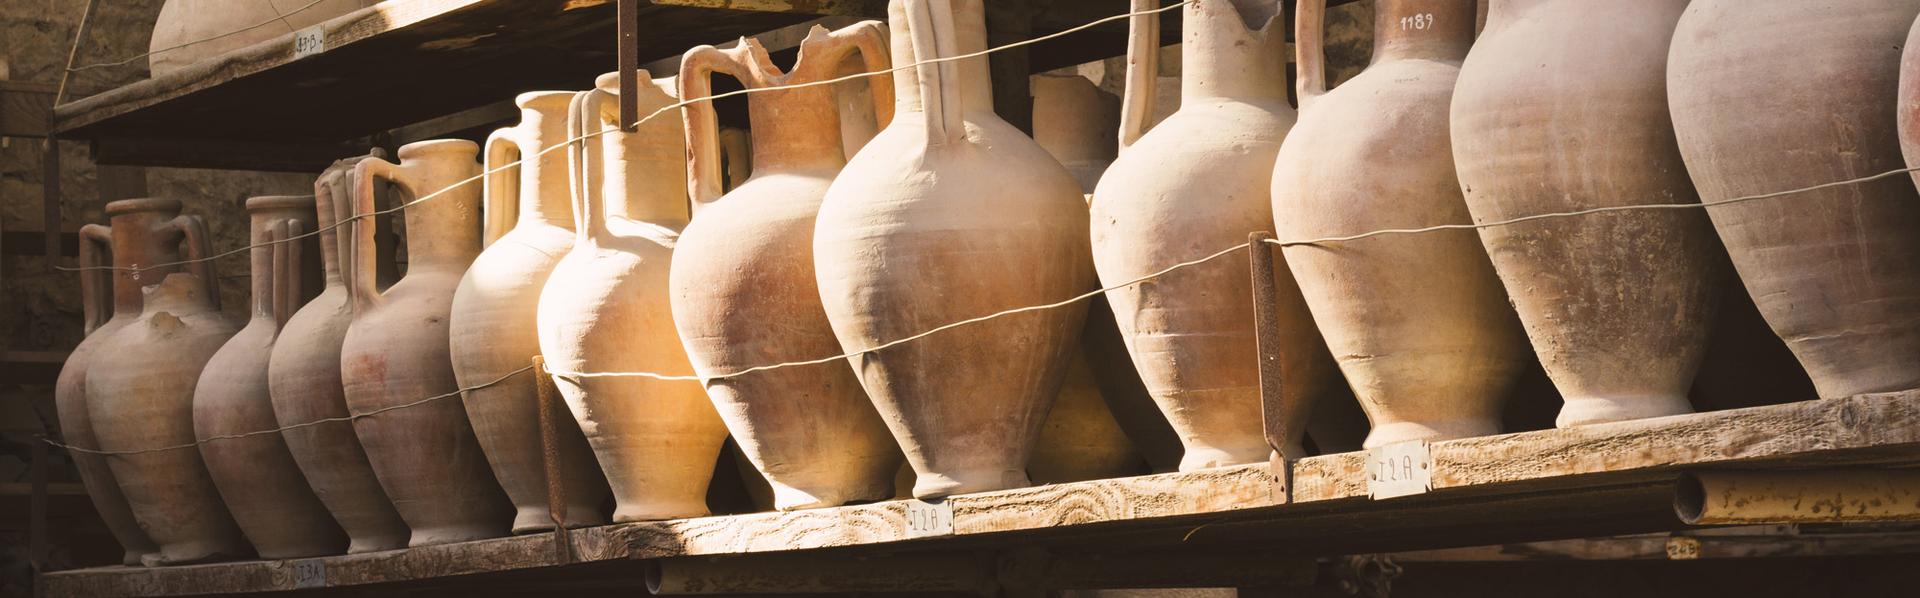 Des découvertes anciennes et des artefacts dans la ville antique de Pompéi en Italie. [Fotolia - Michal]